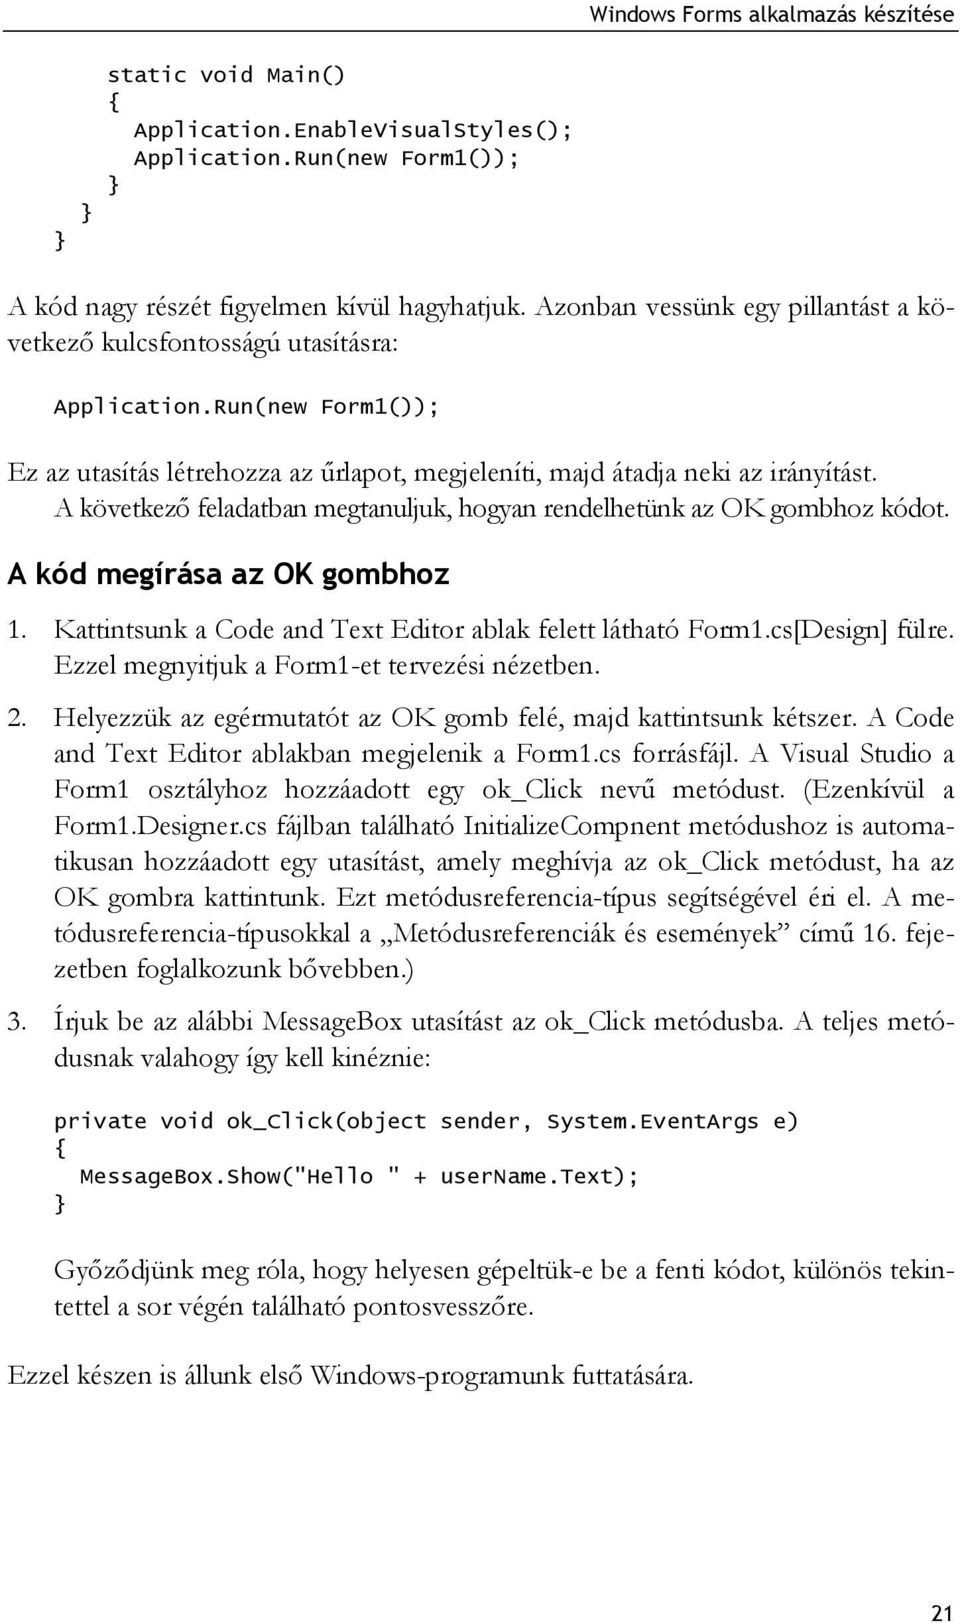 A következő feladatban megtanuljuk, hogyan rendelhetünk az OK gombhoz kódot. A kód megírása az OK gombhoz 1. Kattintsunk a Code and Text Editor ablak felett látható Form1.cs[Design] fülre.